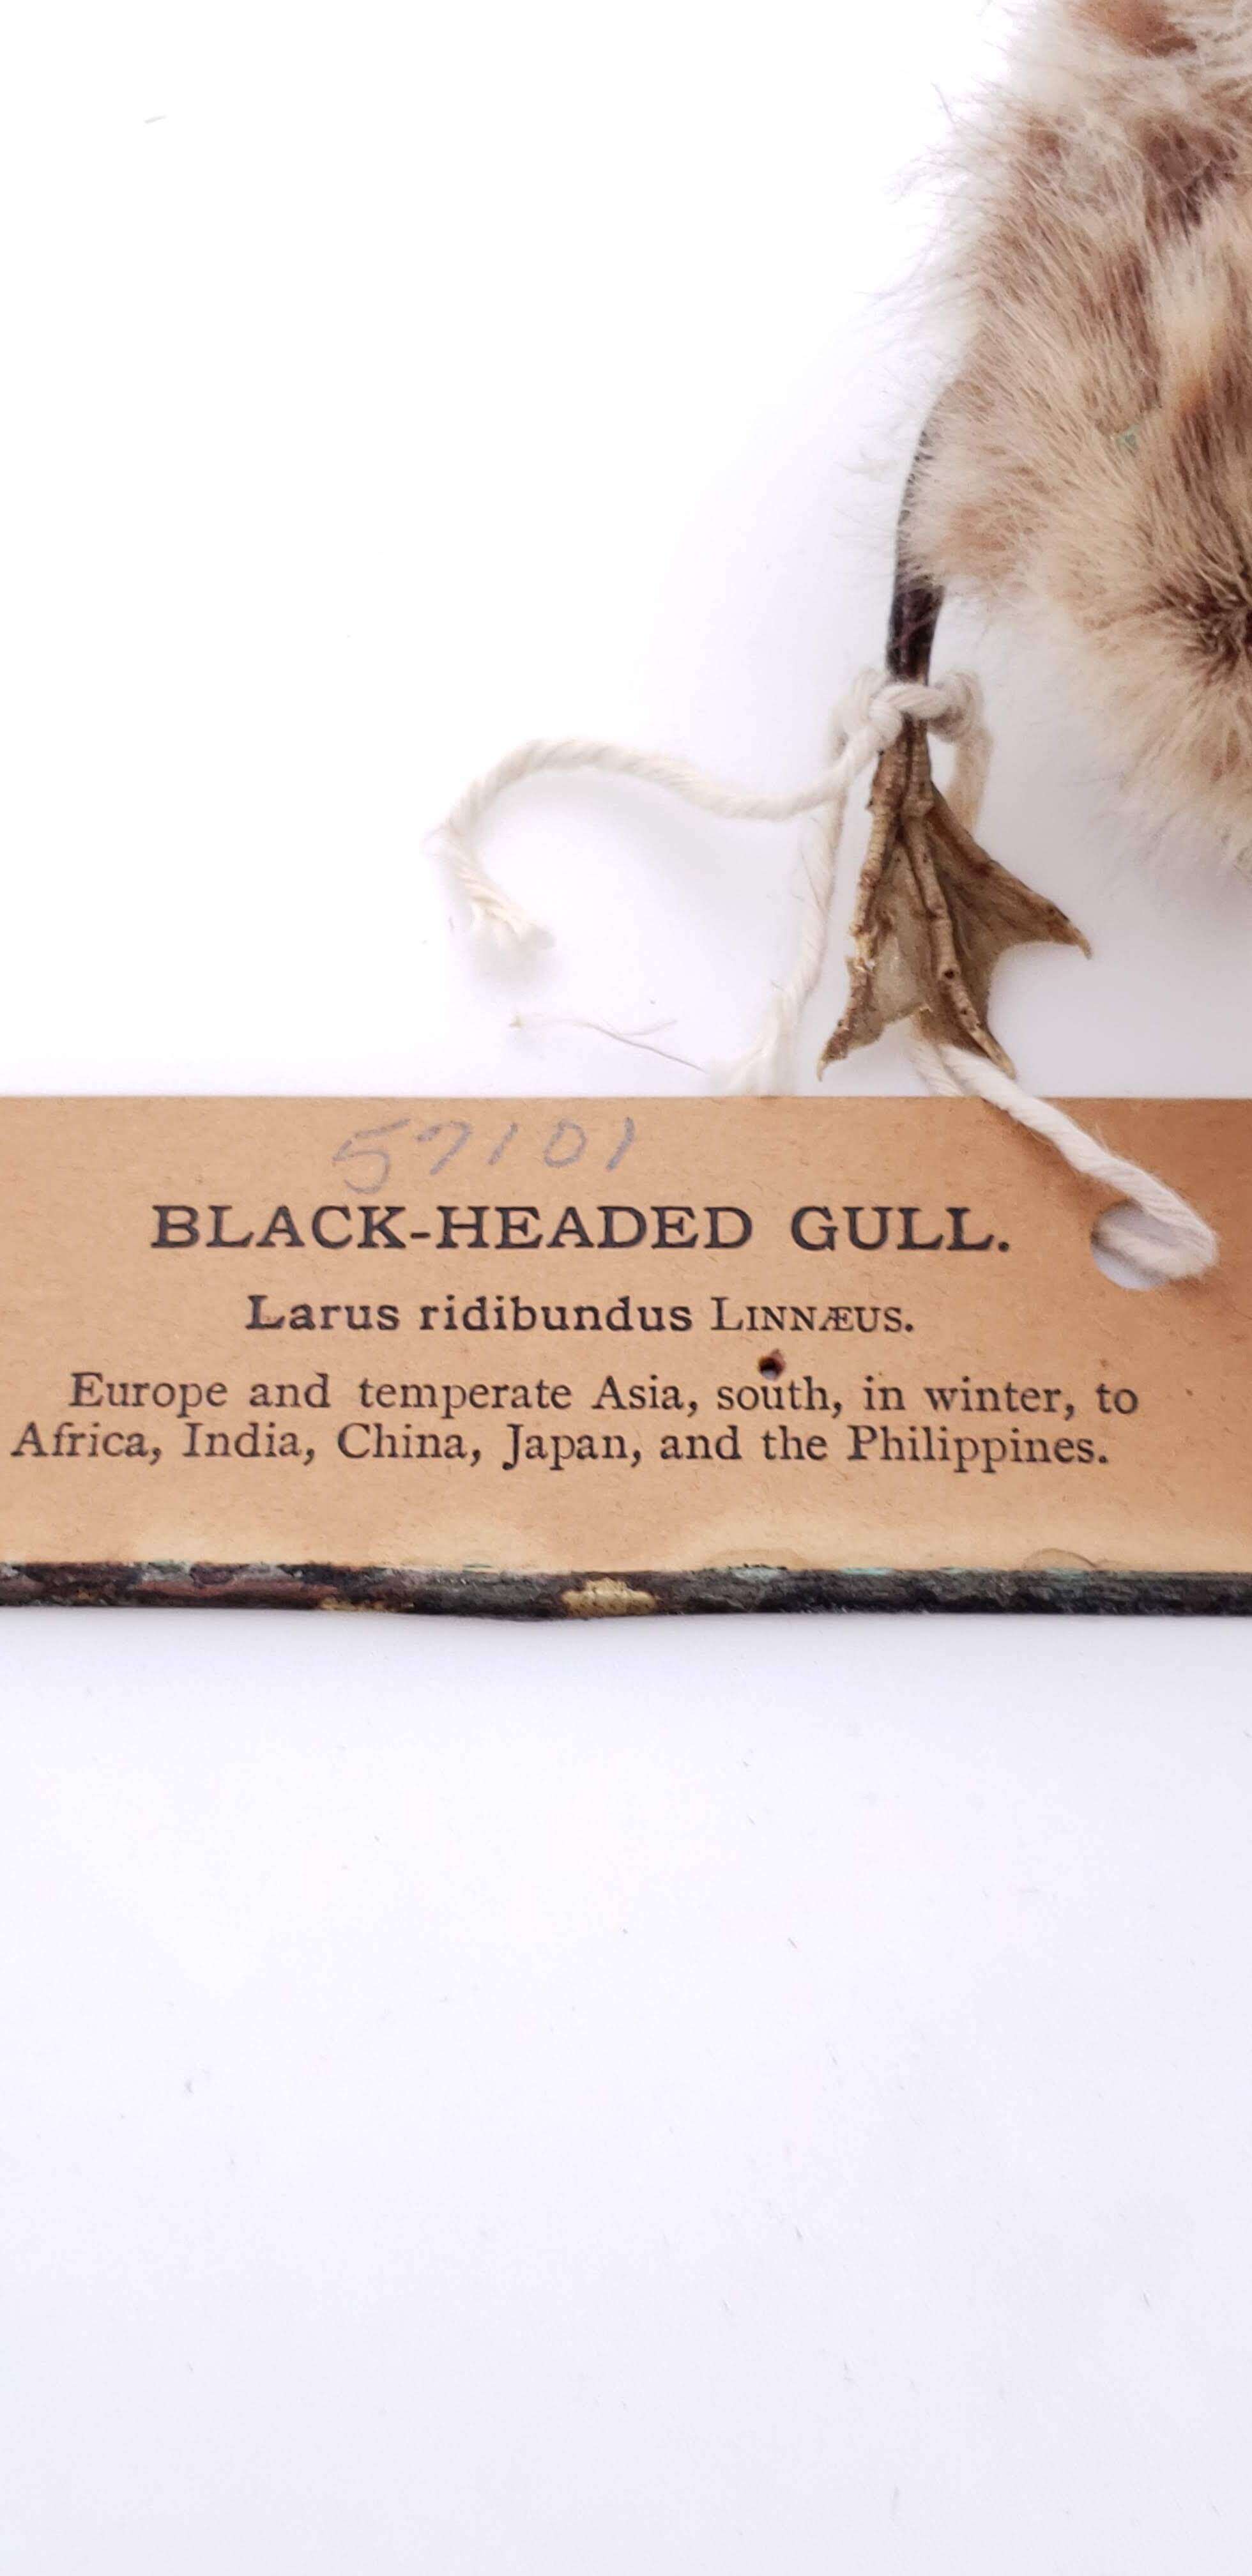 Image of Black-headed gull